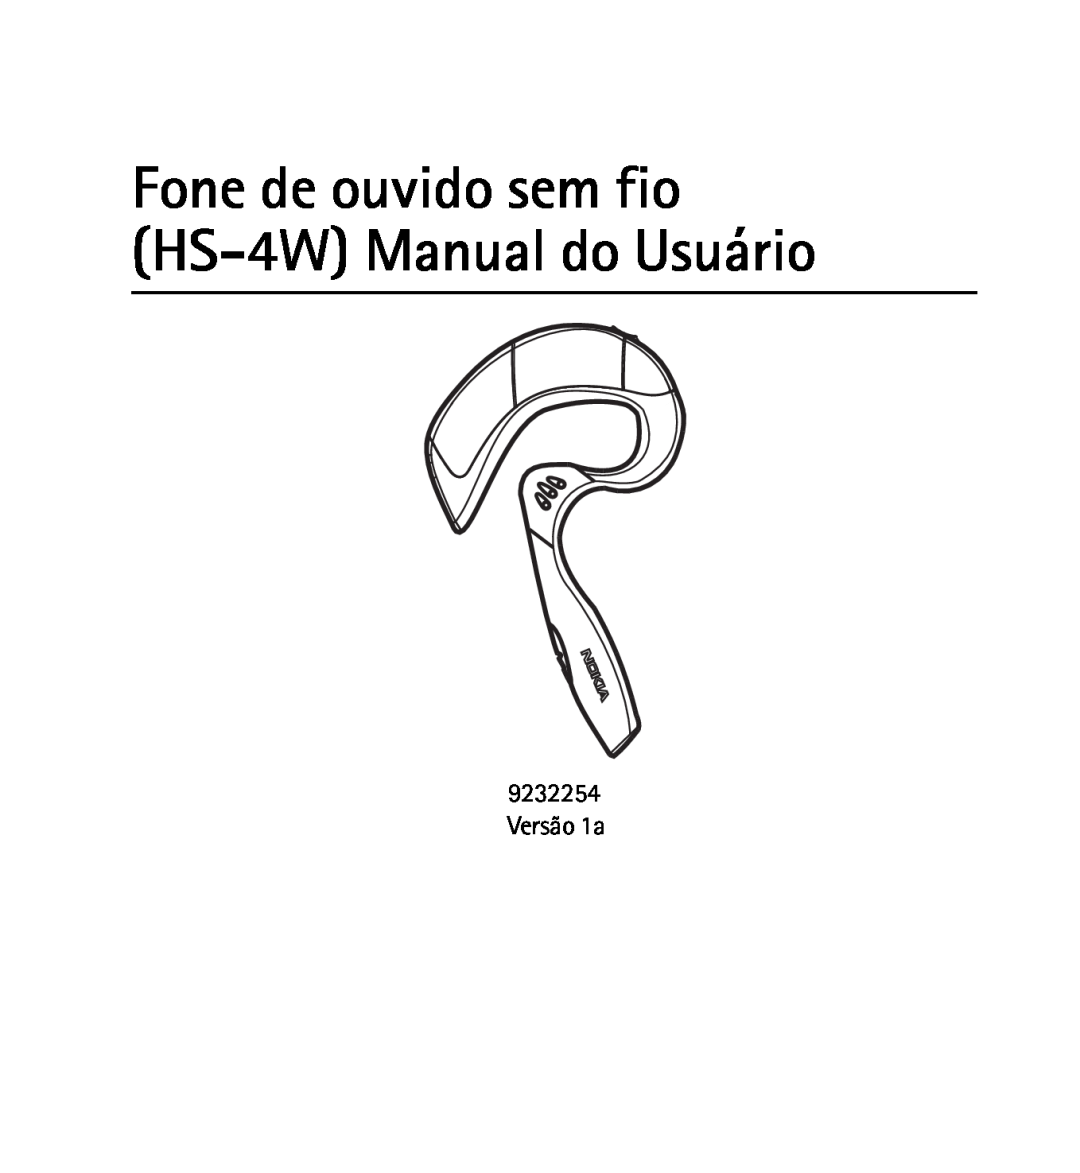 Nokia 9232254 manual Fone de ouvido sem fio HS-4WManual do Usuário, Versão 1a 